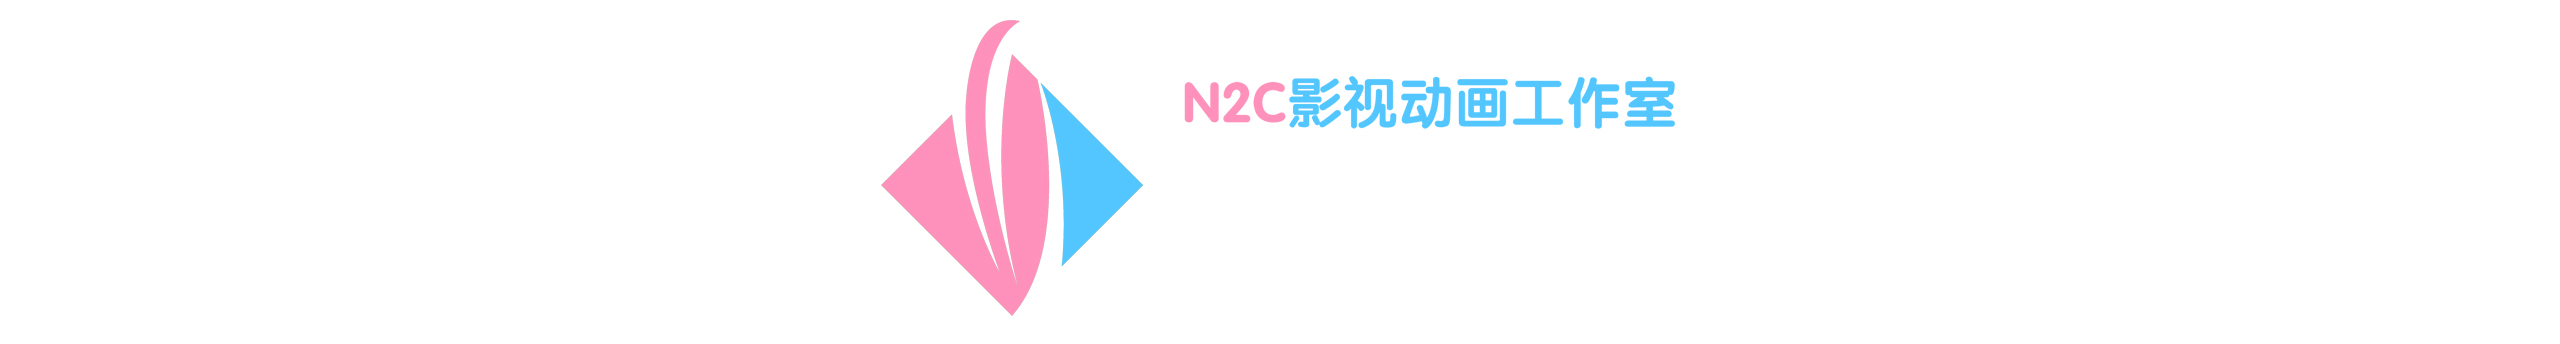 广州三维设计师N2C总部的创作者主页